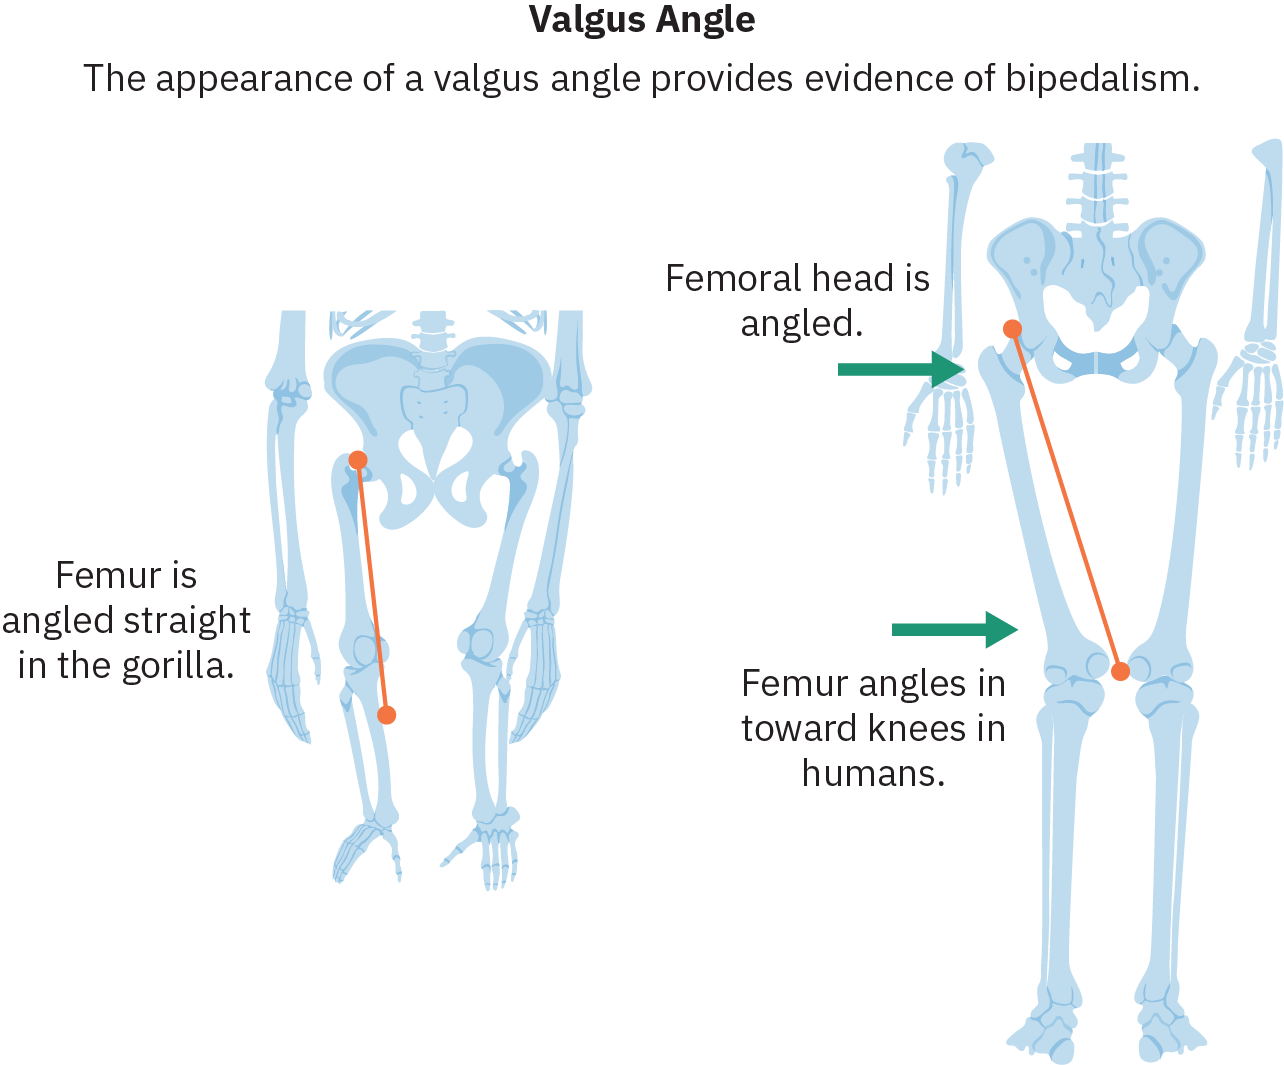 两种不同物种的臀部和腿部的草图。 左边是一个长臂和短腿的骷髅，从臀部直接向下延伸。 一条线描绘了股骨（大腿骨），相关文字上写着 “股骨在大猩猩中呈直角度”。 右边是人体骨架。 这个骨架上的股骨向内倾斜，膝盖比臀窝更靠近。 指向臀部的文字写着 “股骨头有角度”。 指向股骨的文字写着 “人类股骨向膝盖倾斜”。